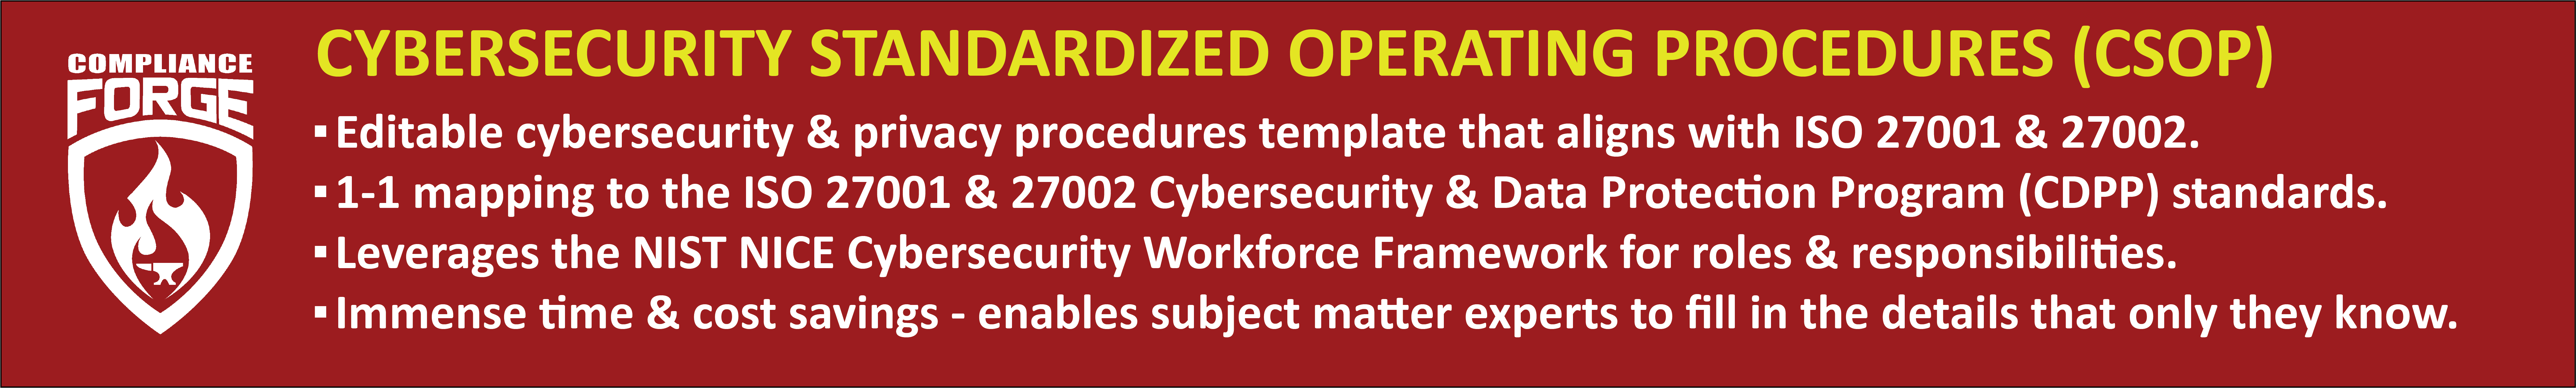 Cybersecurity Standardized Operating Procedures (CSOP)   ISO 27001 / ISO 27002 